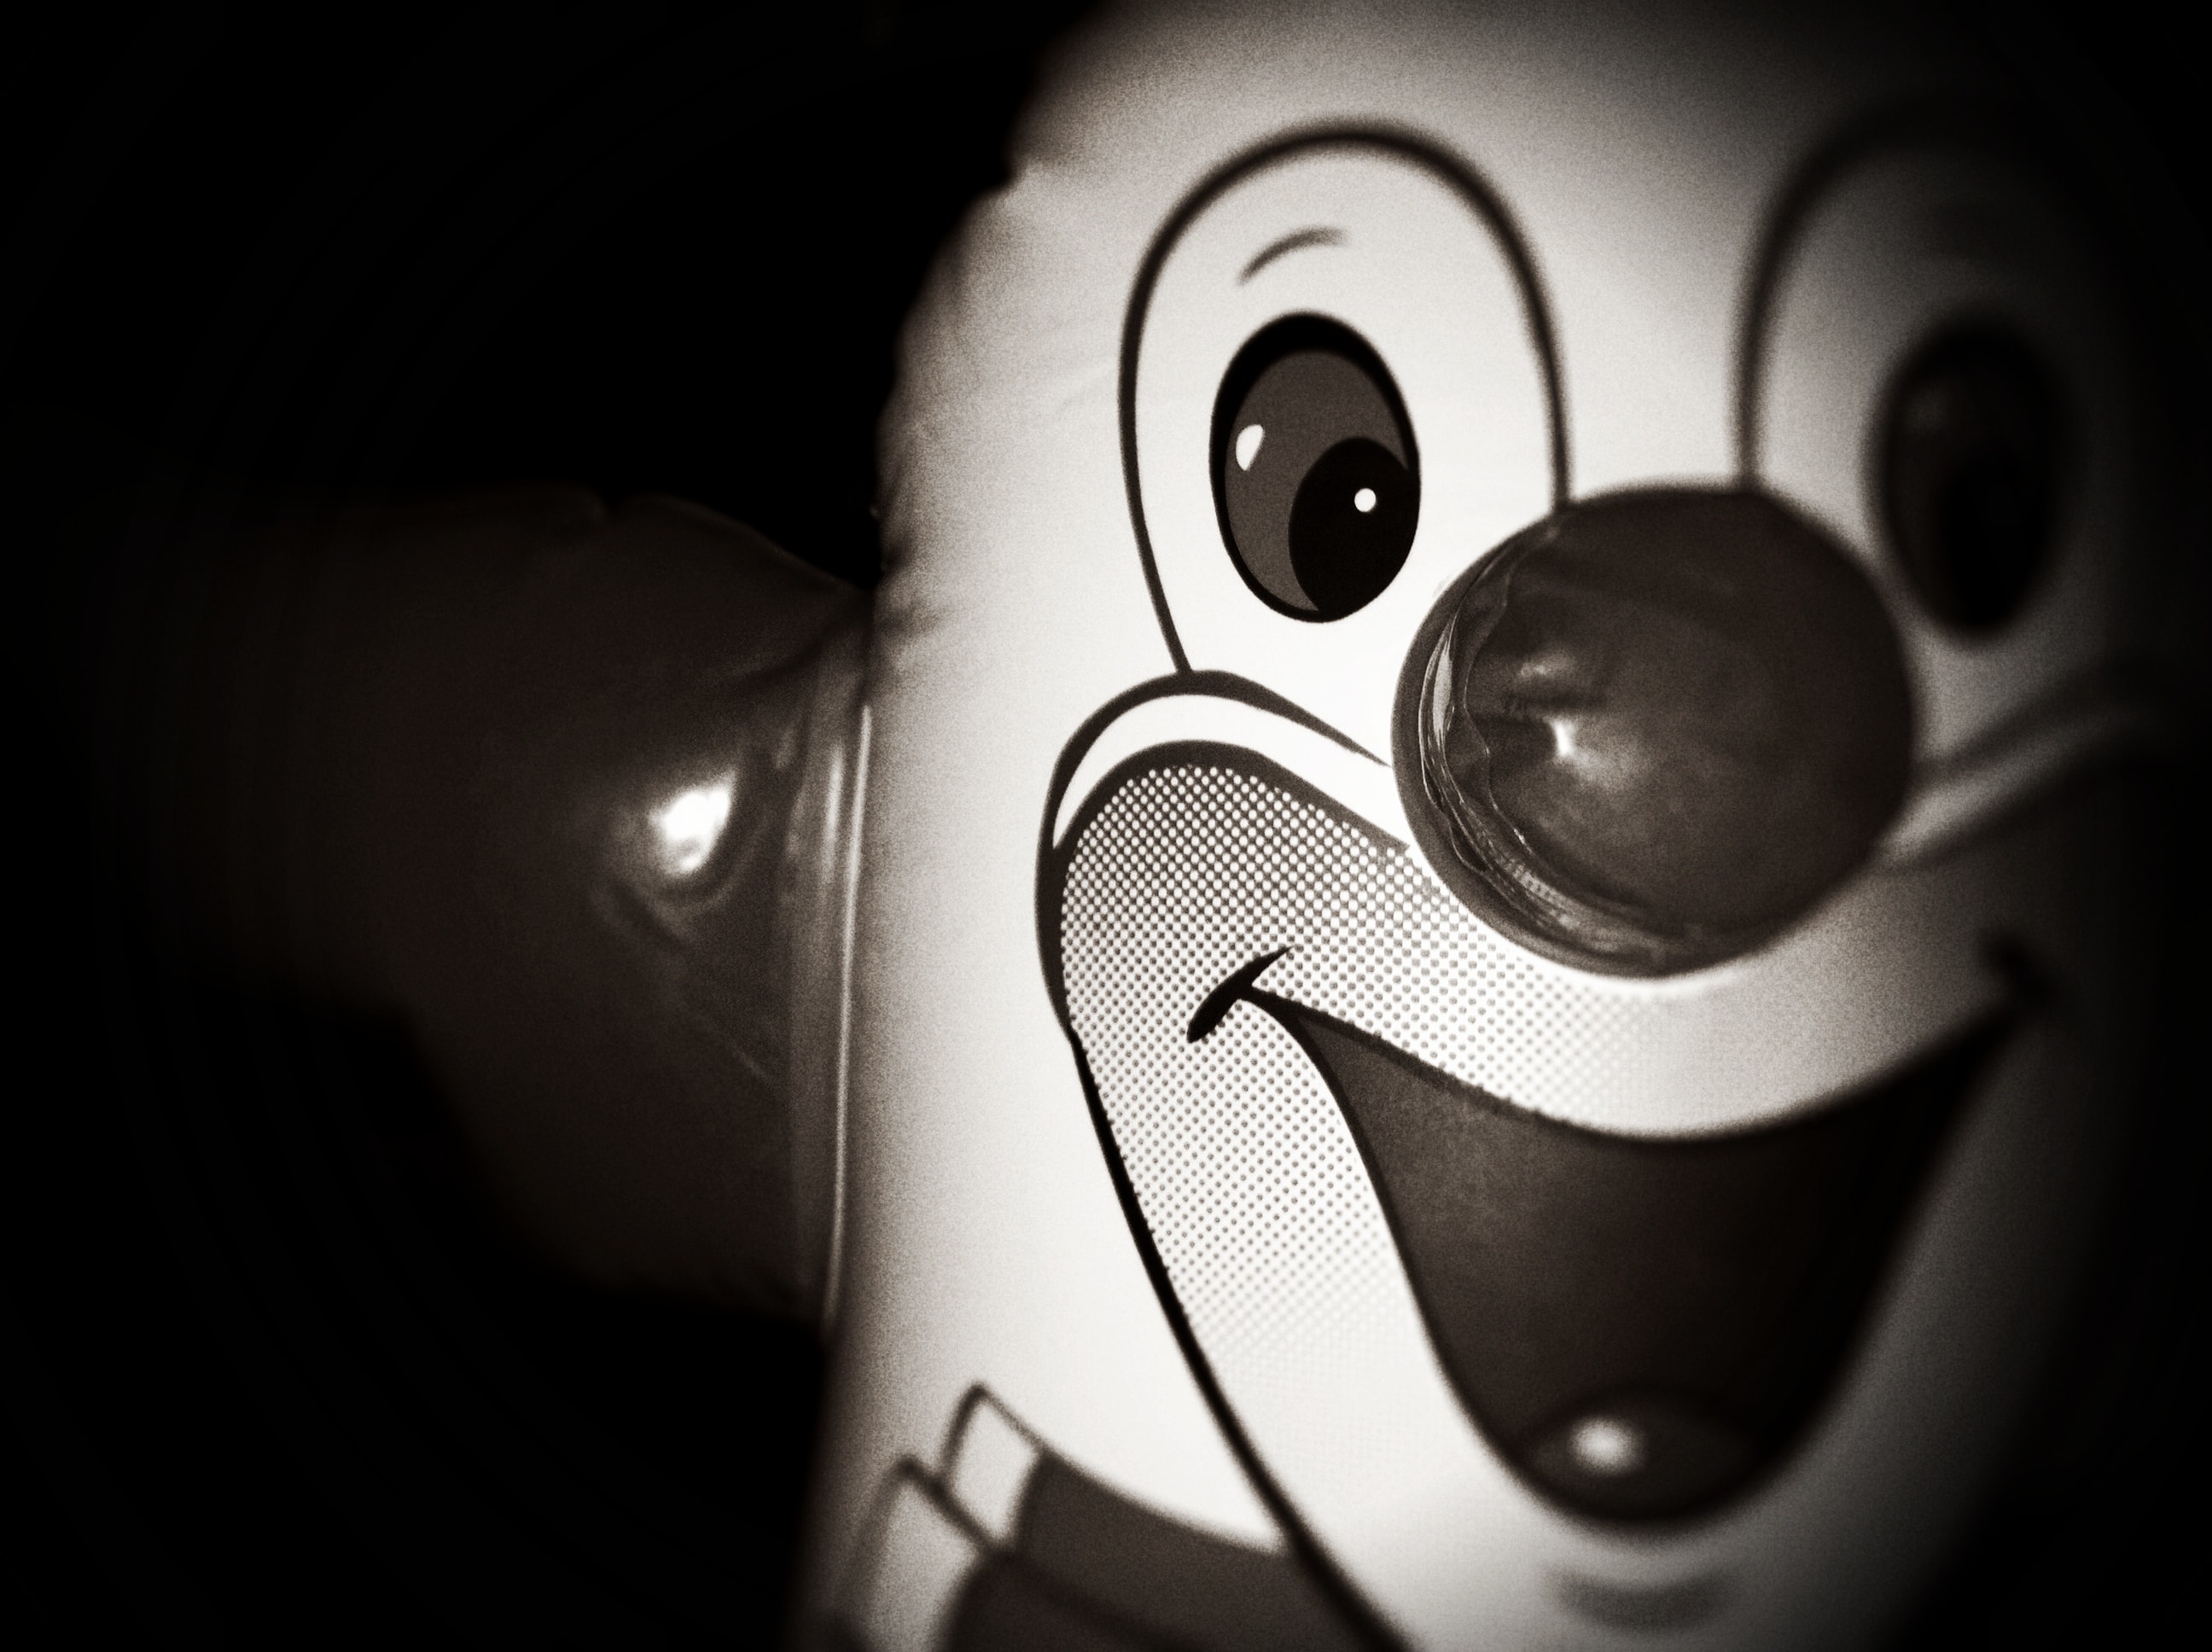 A clown balloon